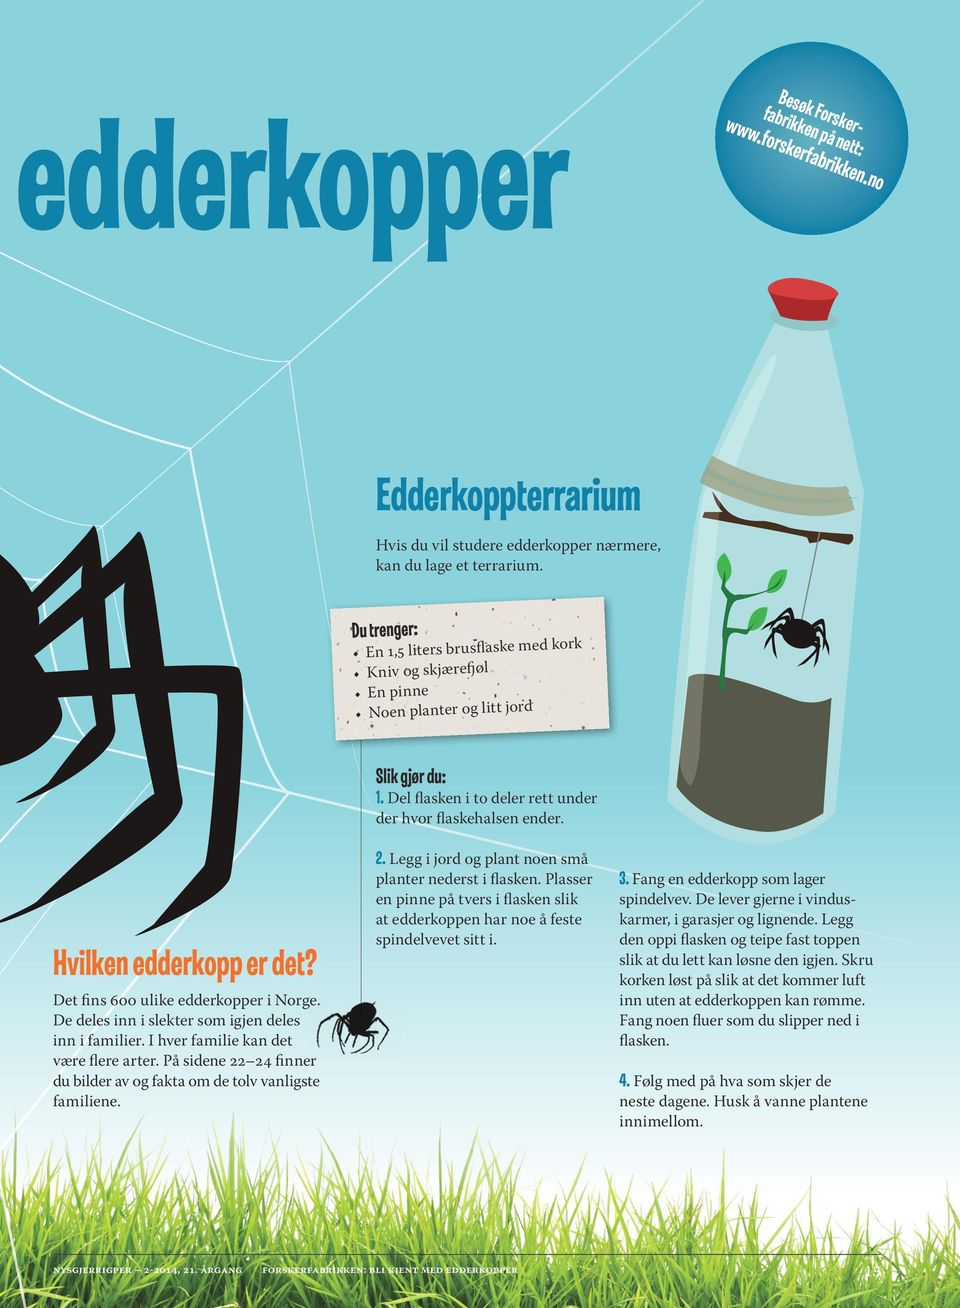 Hvilken edderkopp er det? Det fins 600 ulike edderkopper i Norge. De deles inn i slekter som igjen deles inn i familier. I hver familie kan det være flere arter.